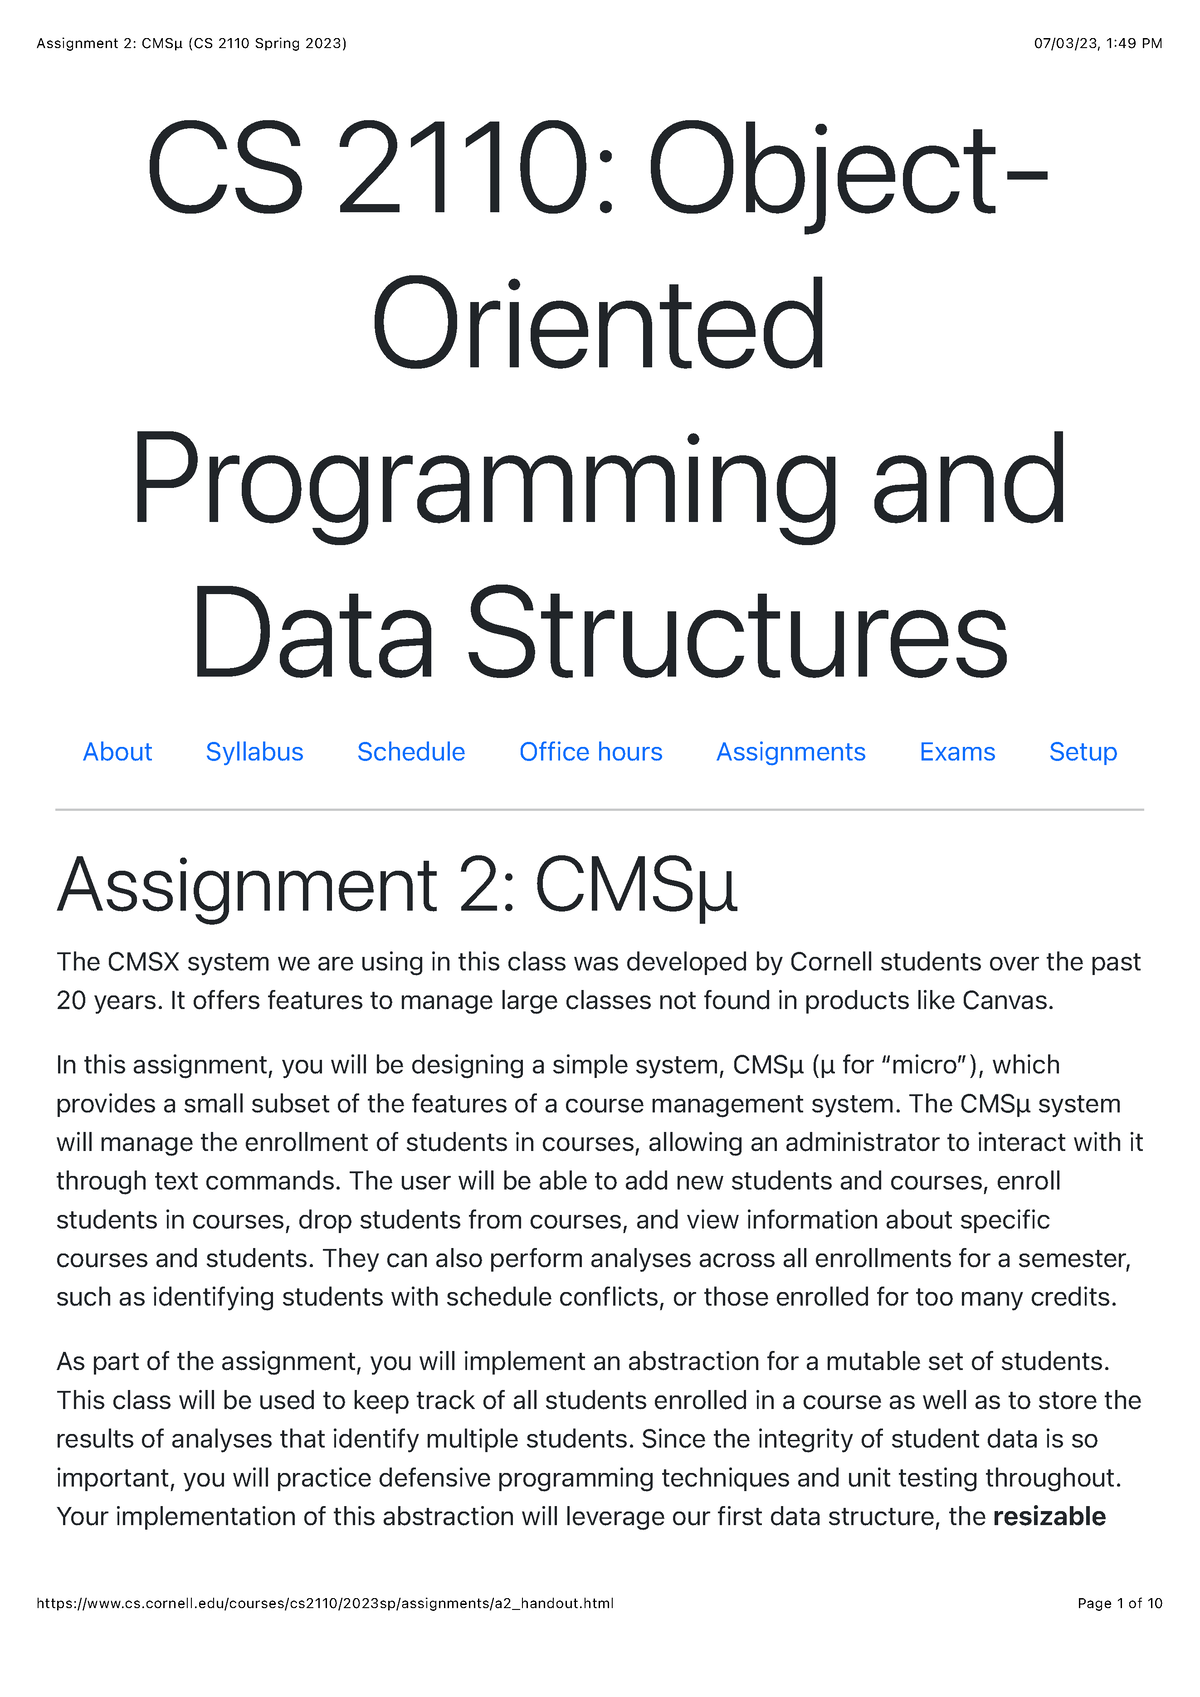 Assignment 2 CMSμ (CS 2110 Spring 2023) CS 2110 Object Oriented